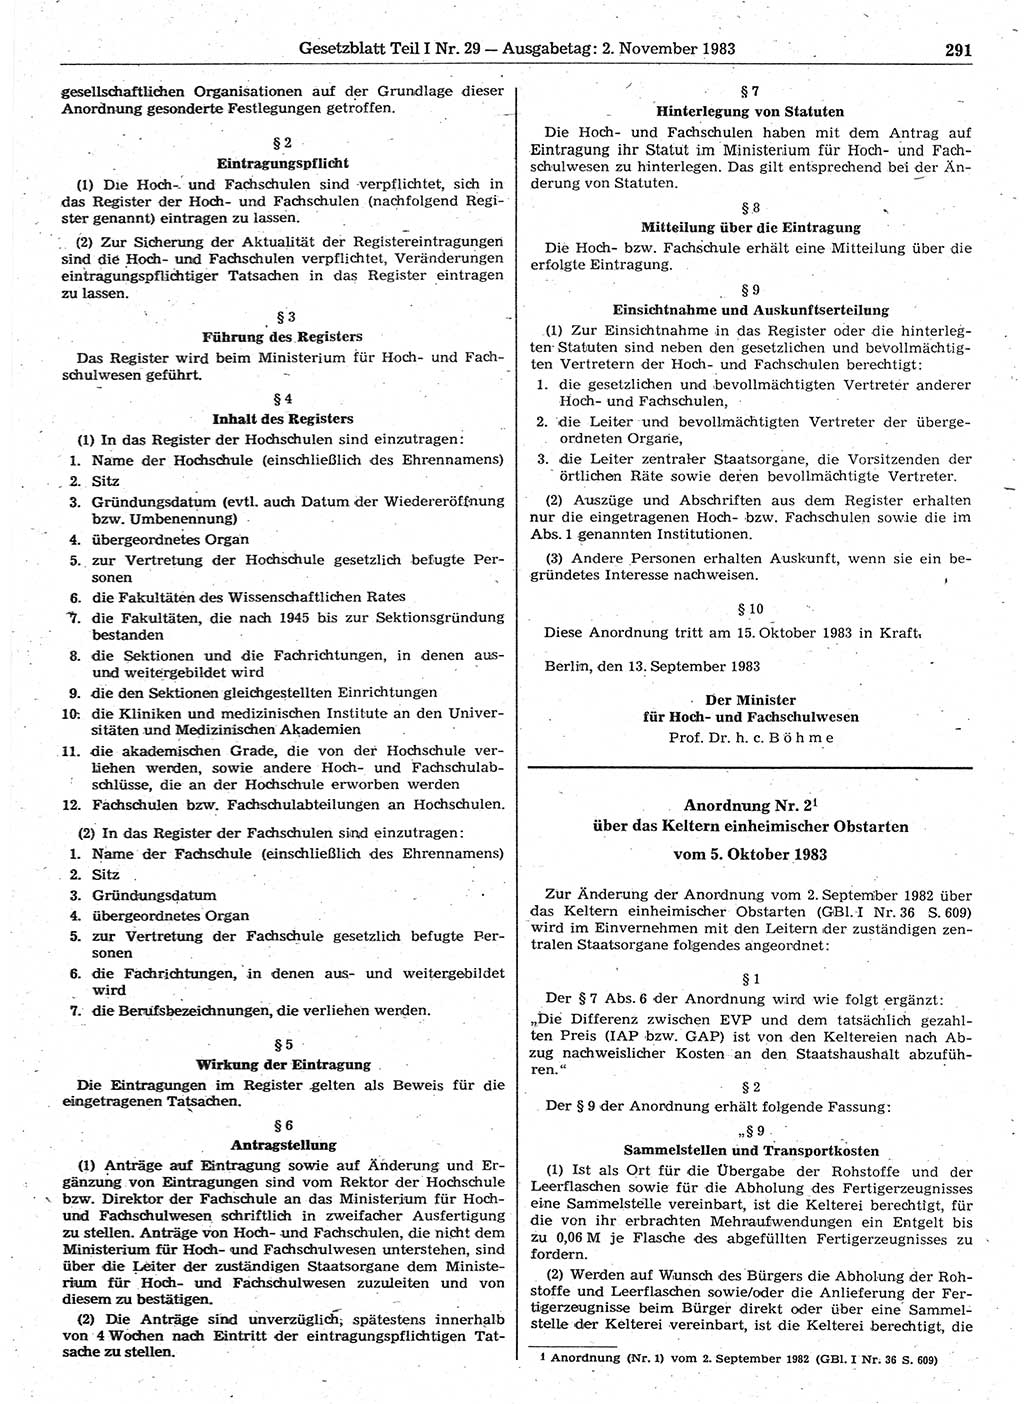 Gesetzblatt (GBl.) der Deutschen Demokratischen Republik (DDR) Teil Ⅰ 1983, Seite 291 (GBl. DDR Ⅰ 1983, S. 291)